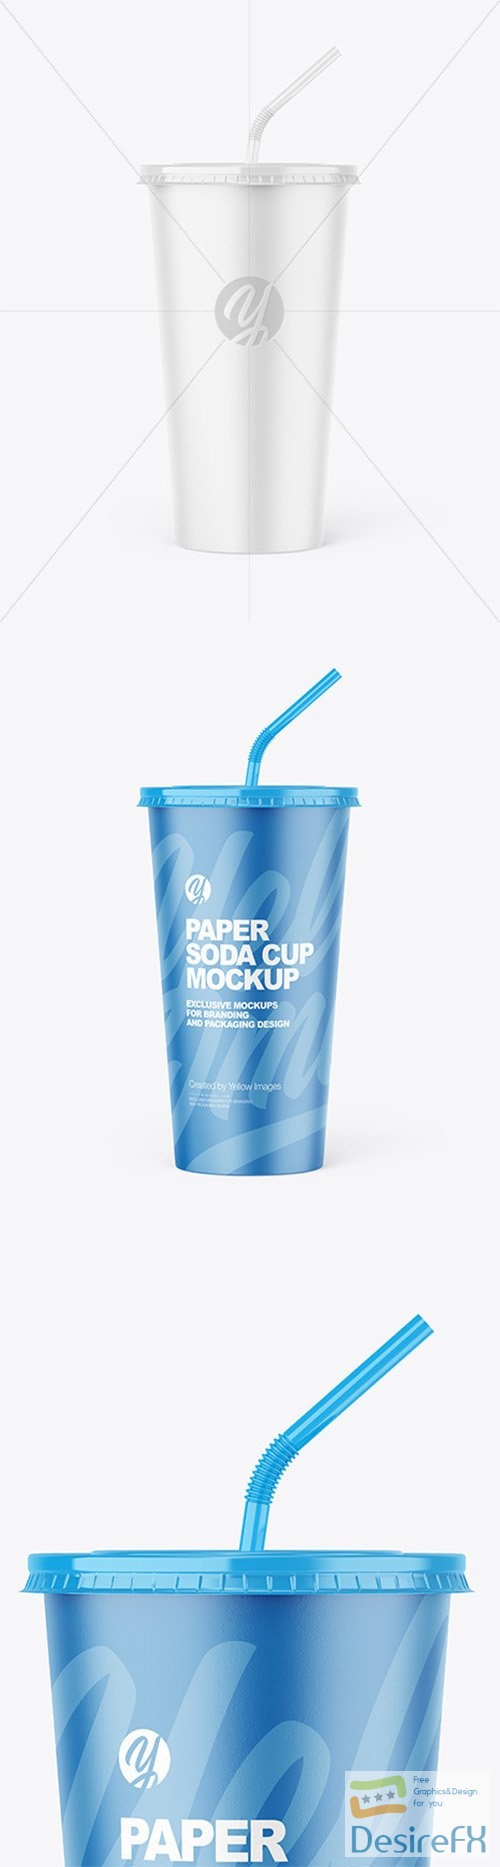 Paper Soda Cup Mockup 85720 TIF